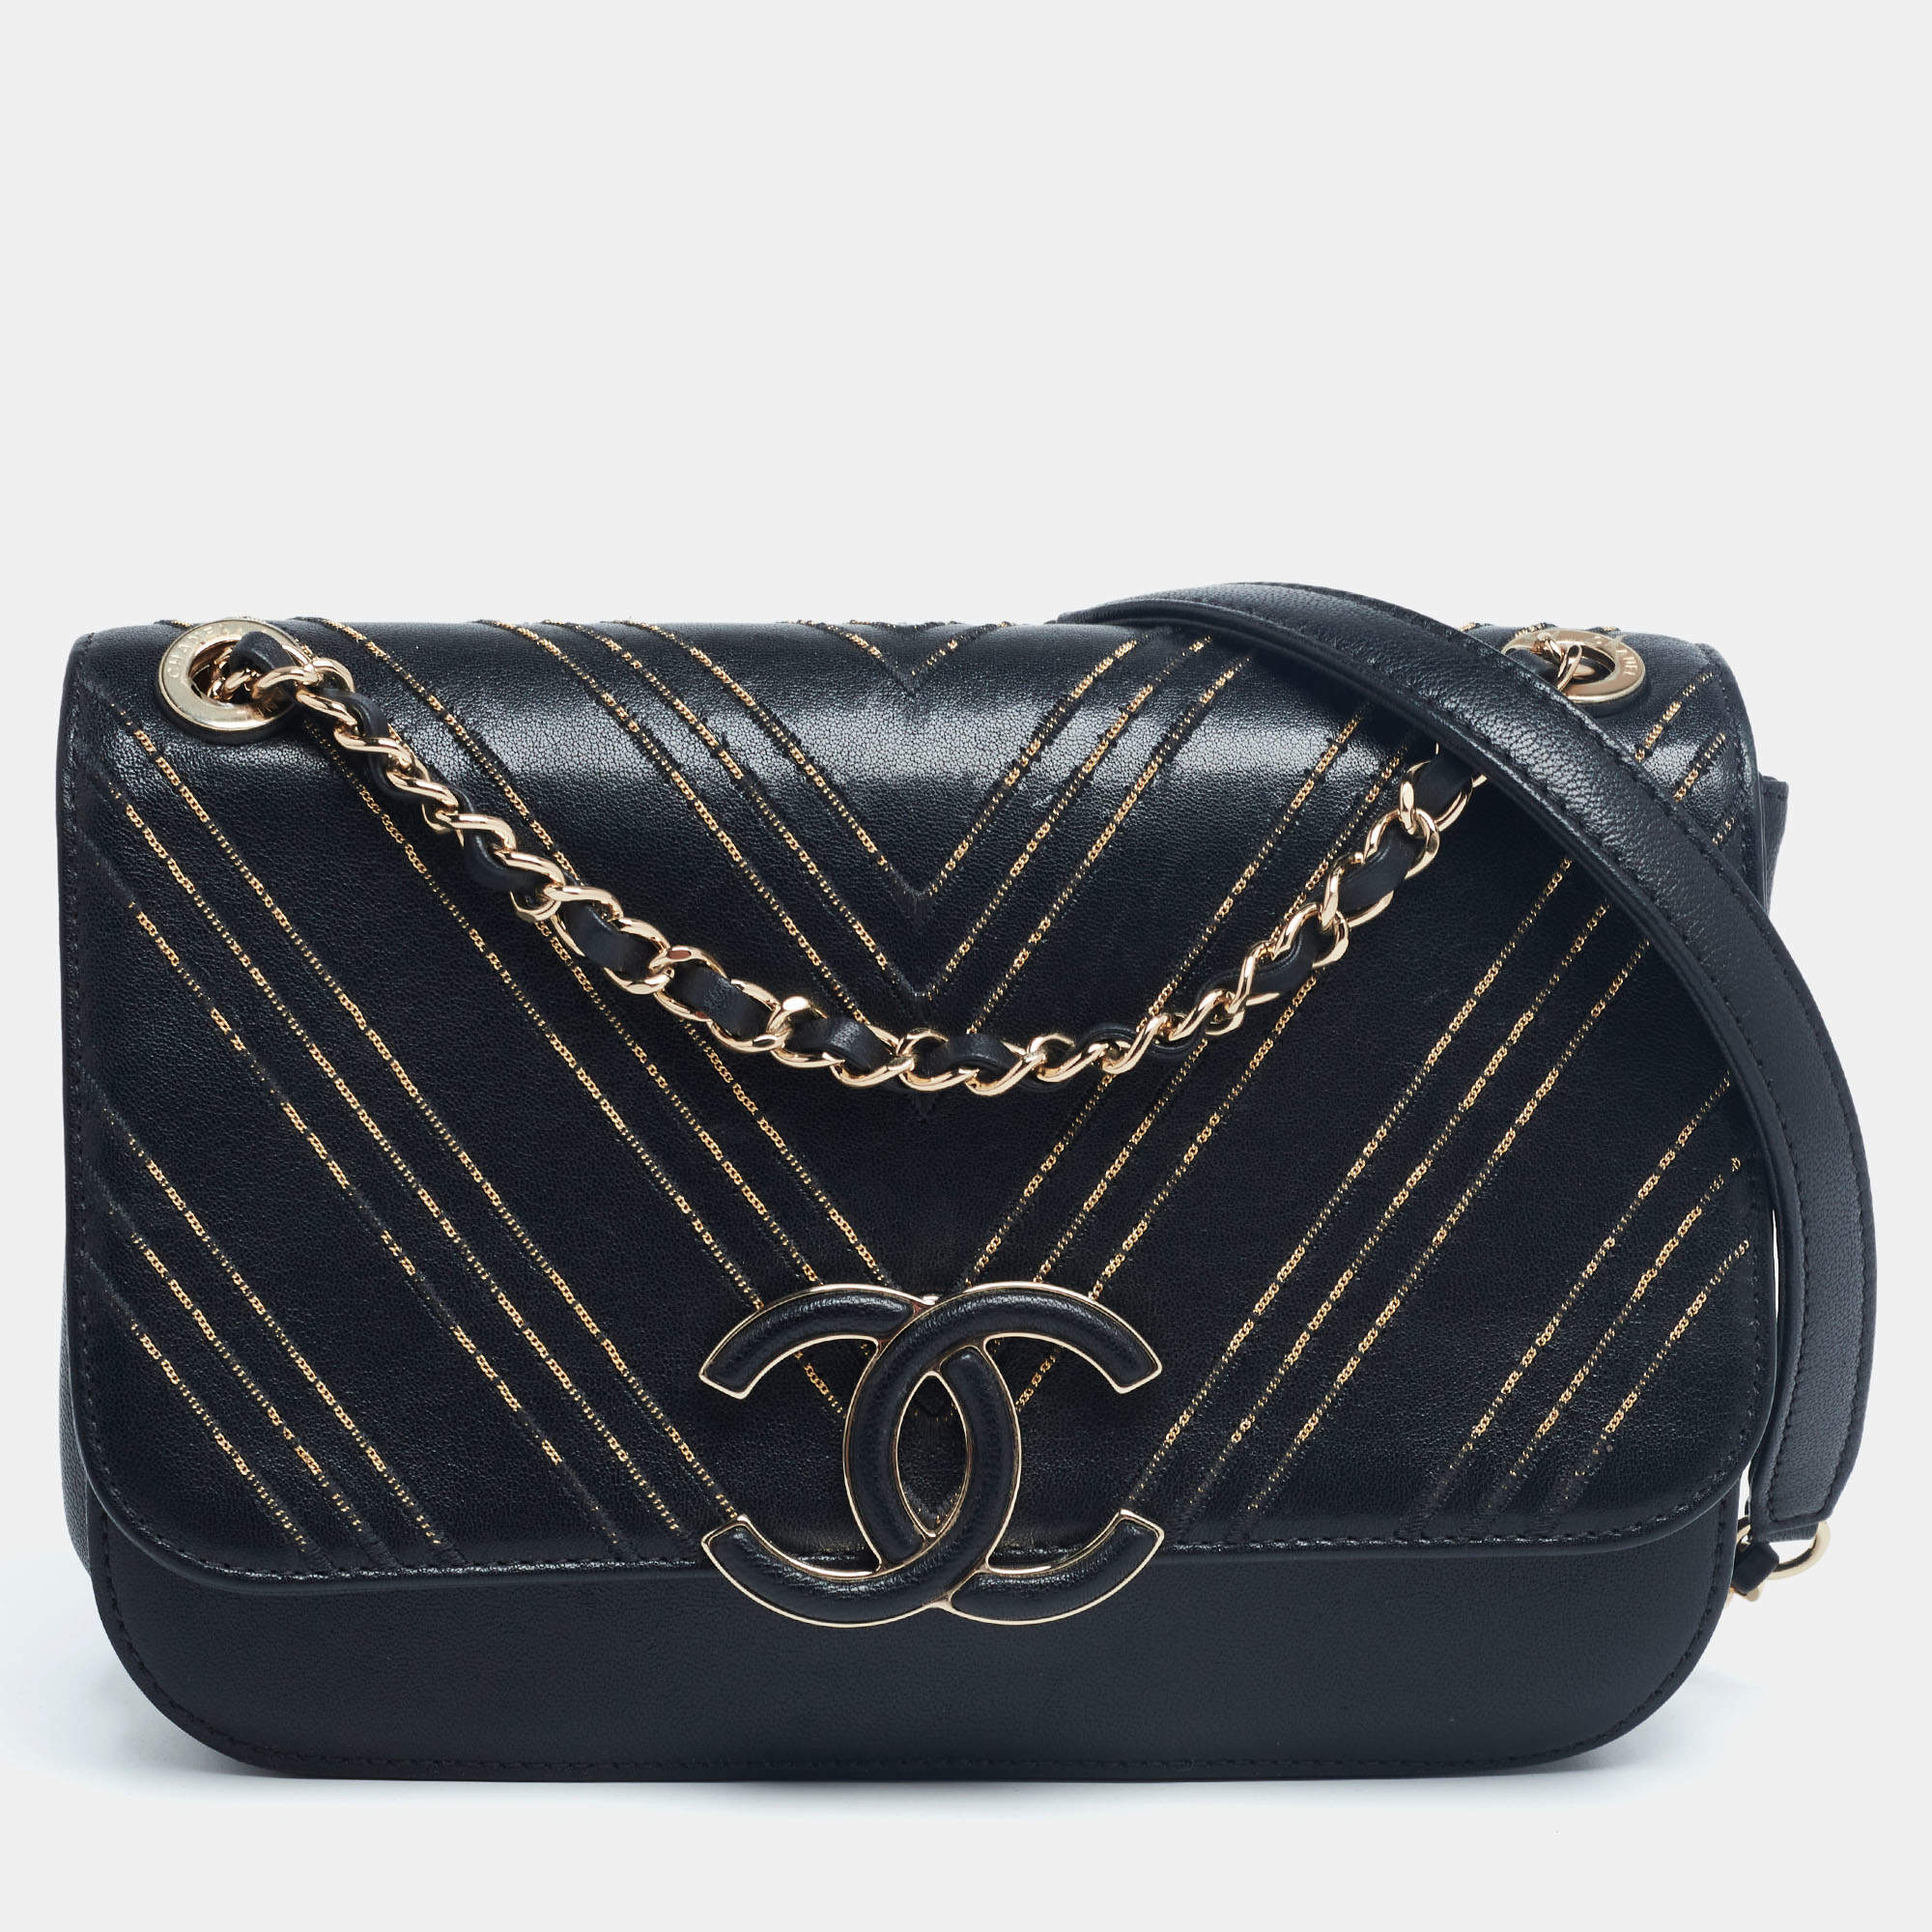 Chanel Black/Gold Chevron Leather CC Subtle Flap Bag Chanel